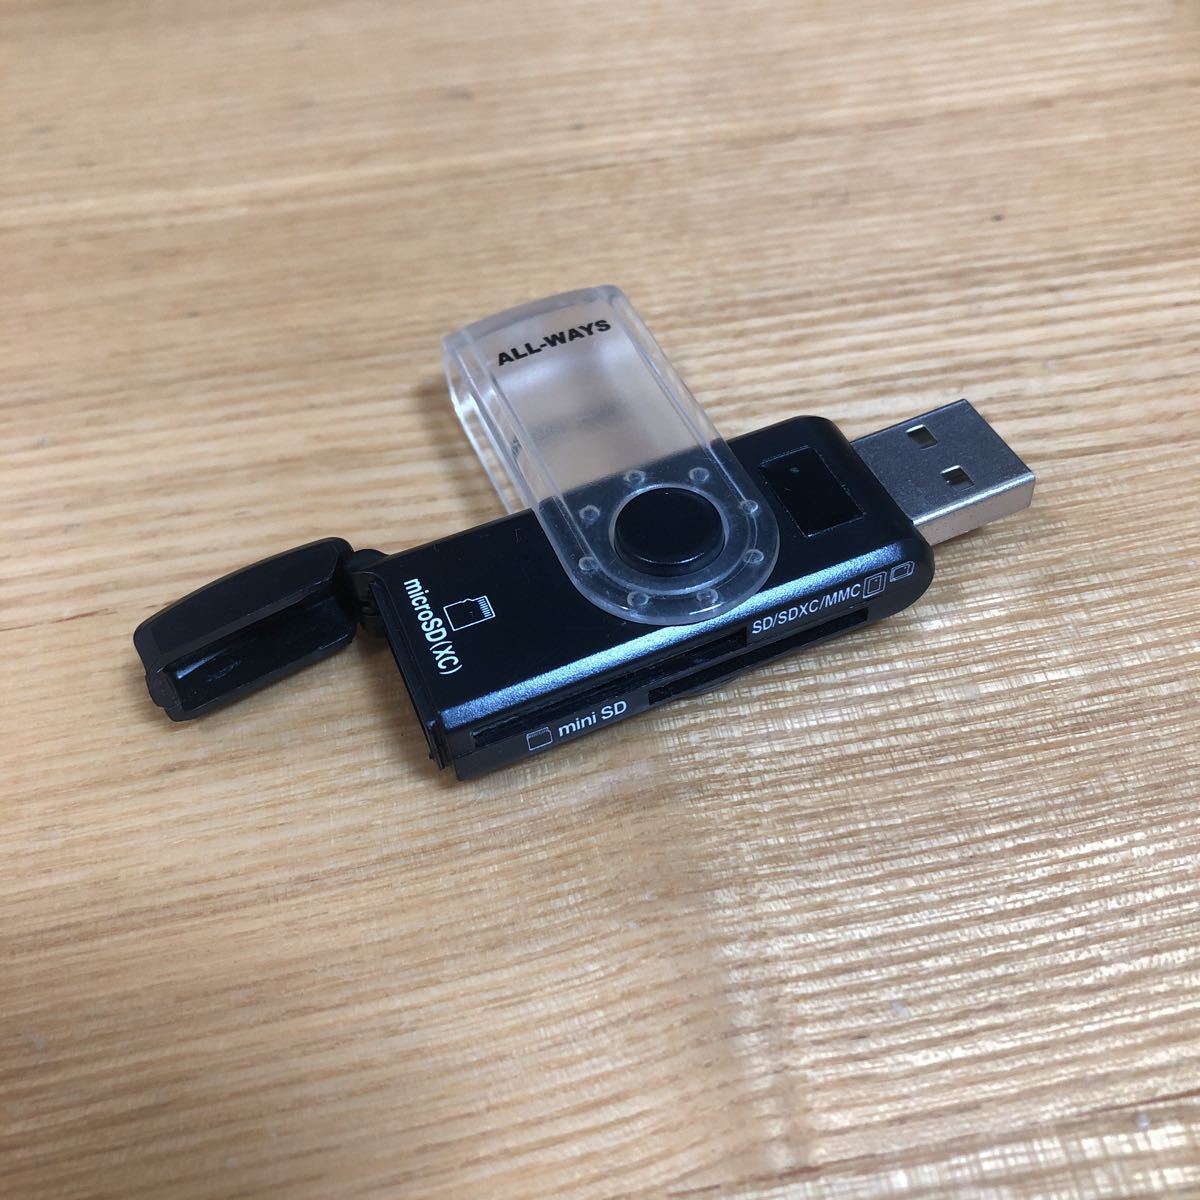 USBハブ WiFi LANケーブル SDカードリーダー